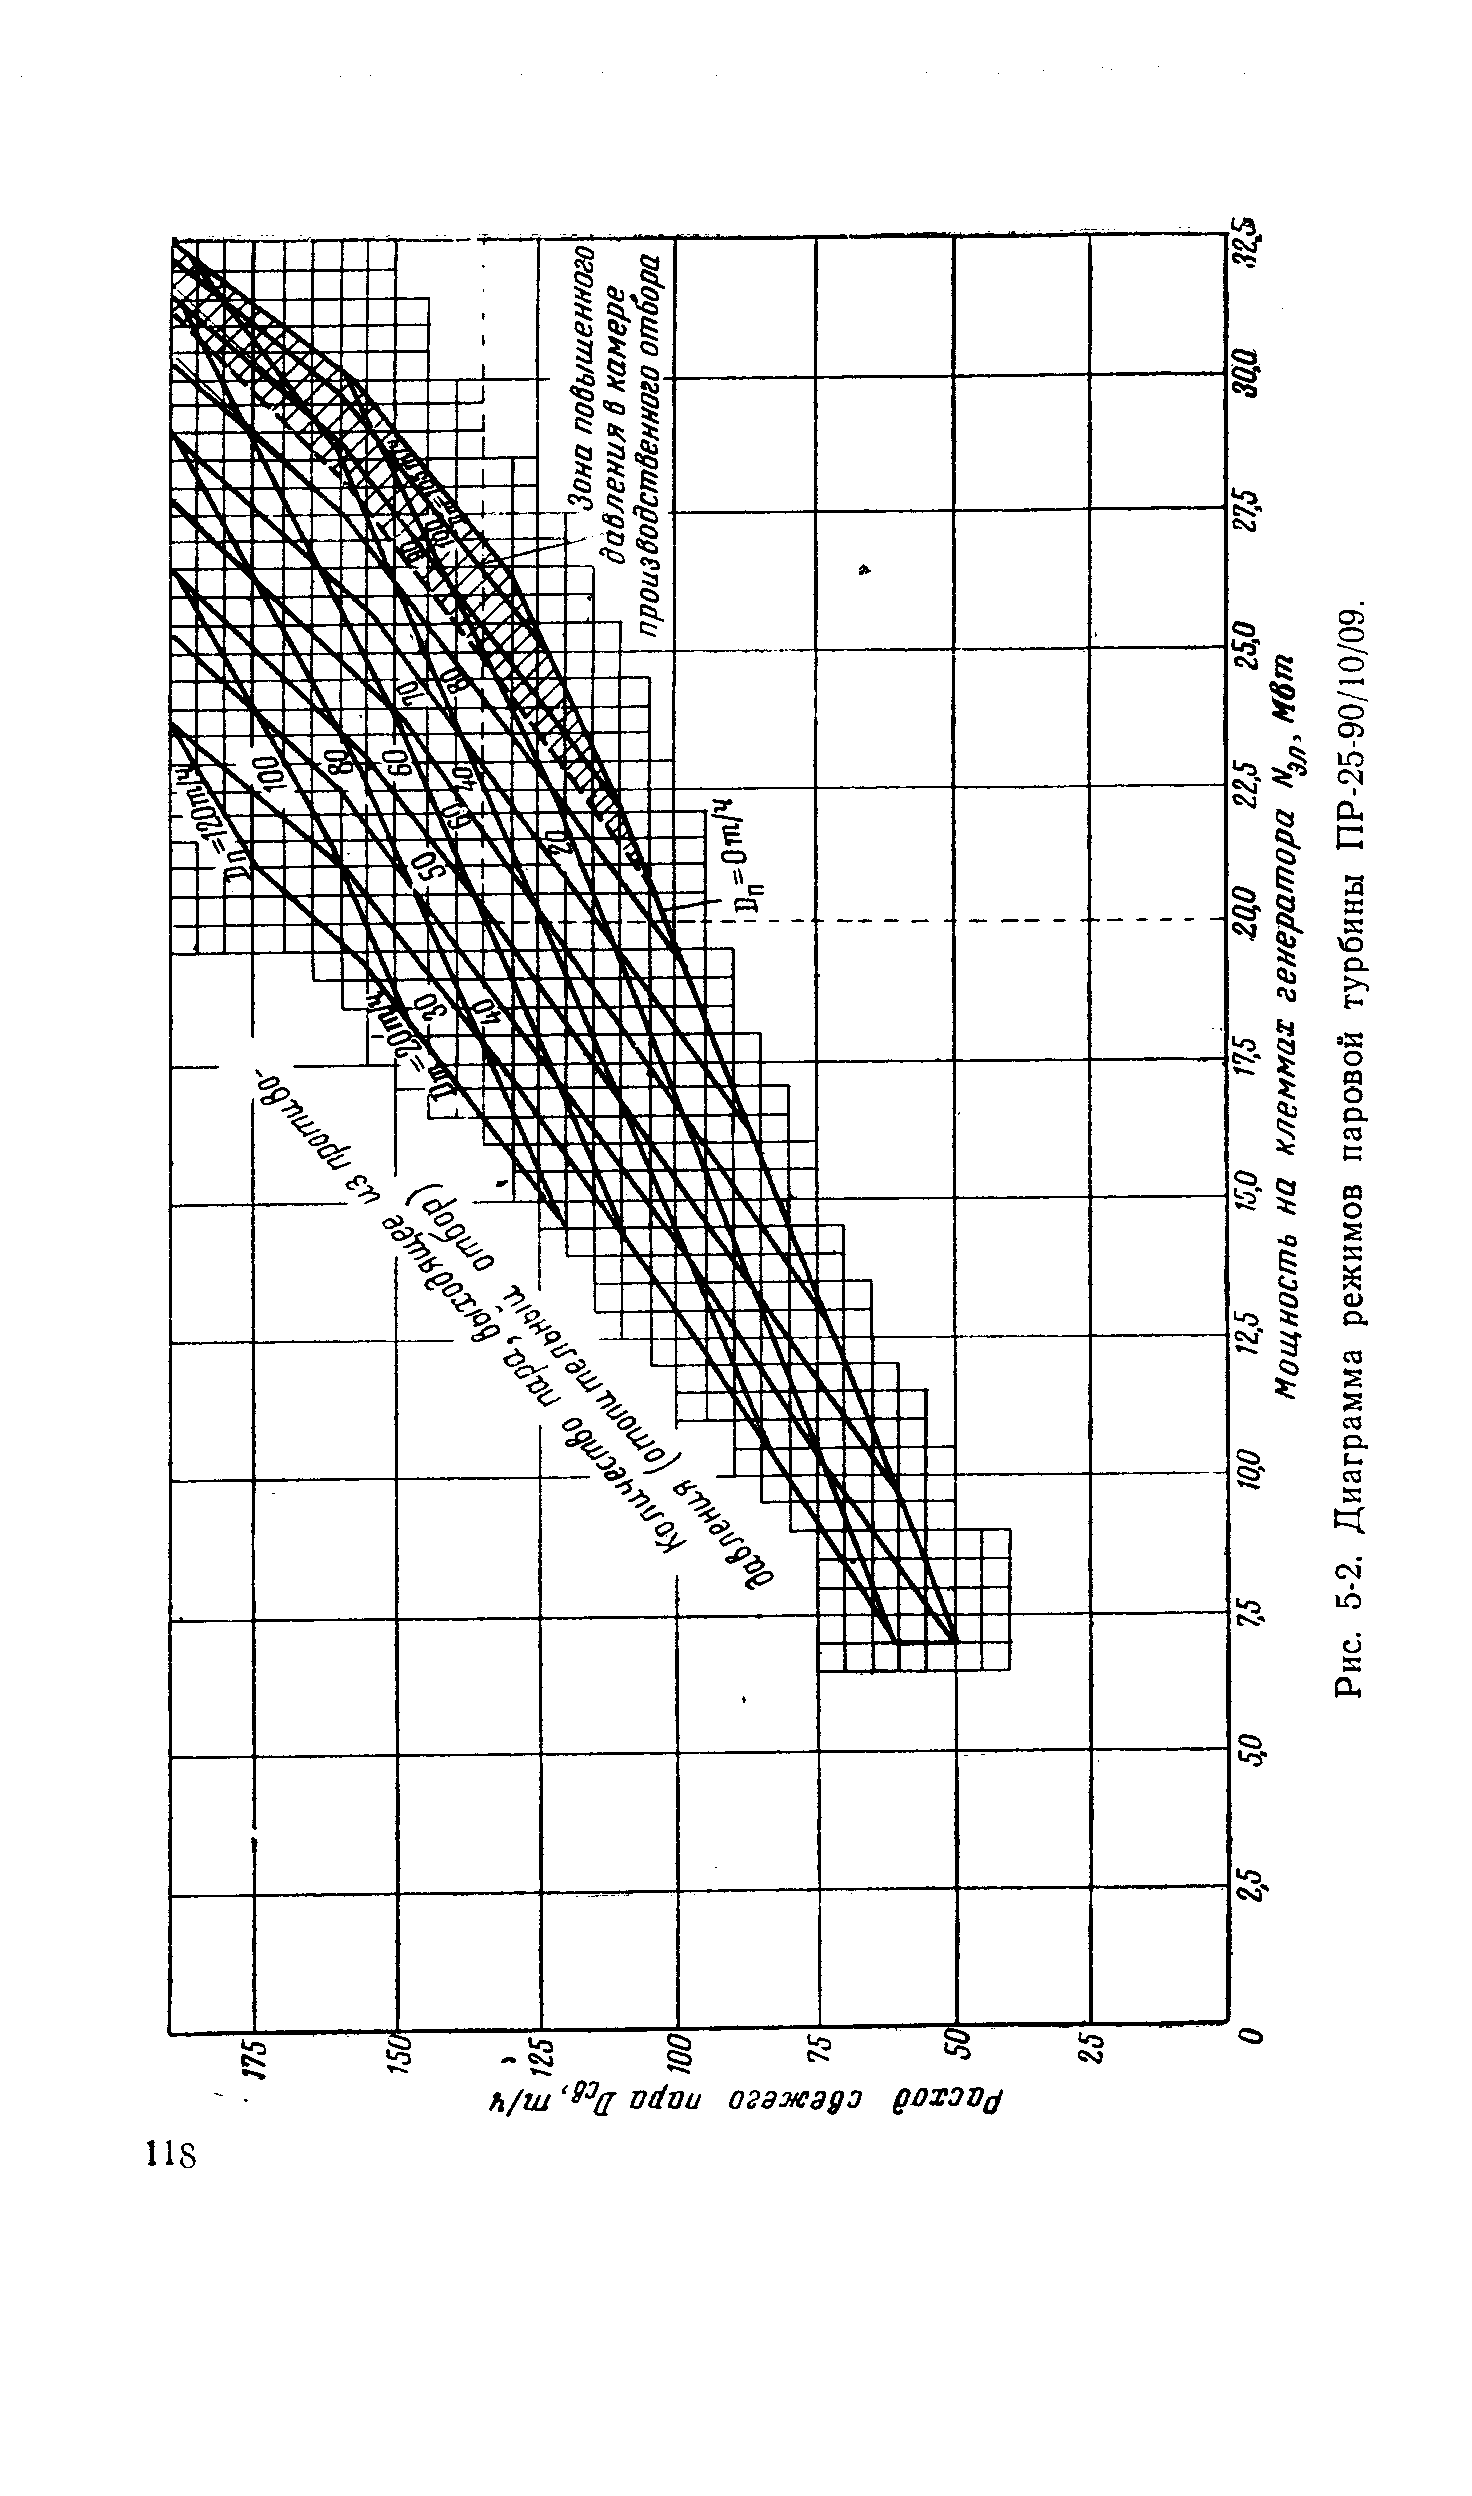 Рис. 5-2. Диаграмма режимов паровой турбины ПР-25-90/10/09.
